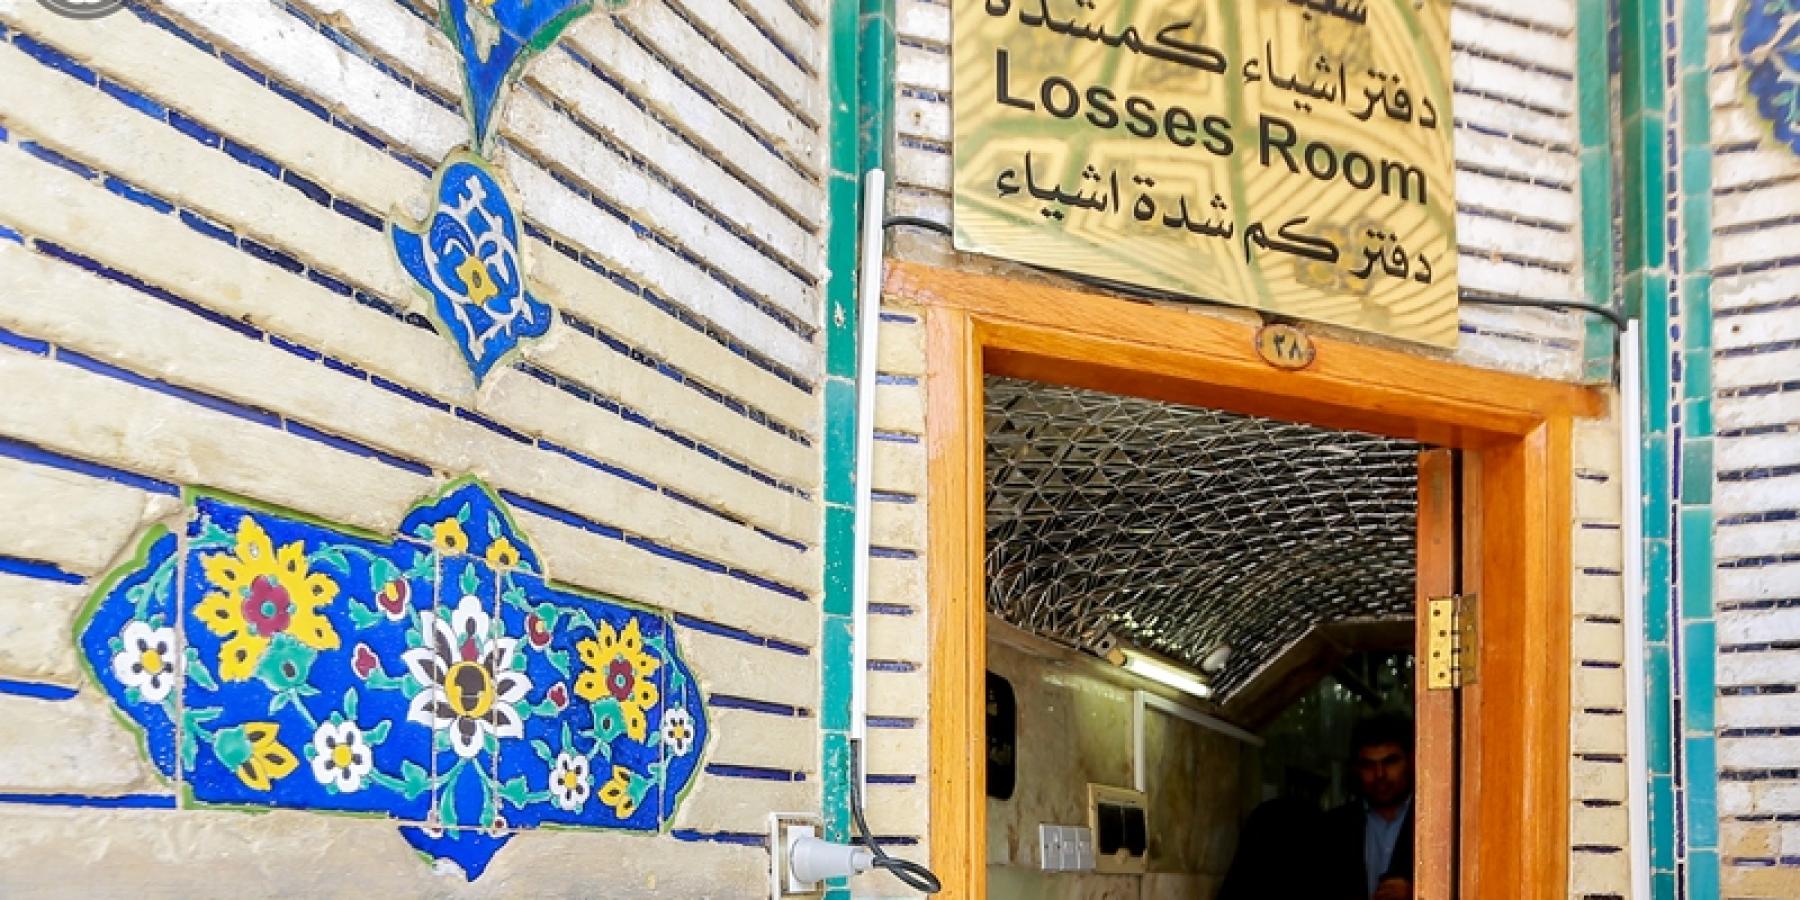 شعبة المفقودات في العتبة العلوية تسلم القنصلية الإيرانية (120) جواز سفر إيراني مفقود خلال الزيارة الأربعينية